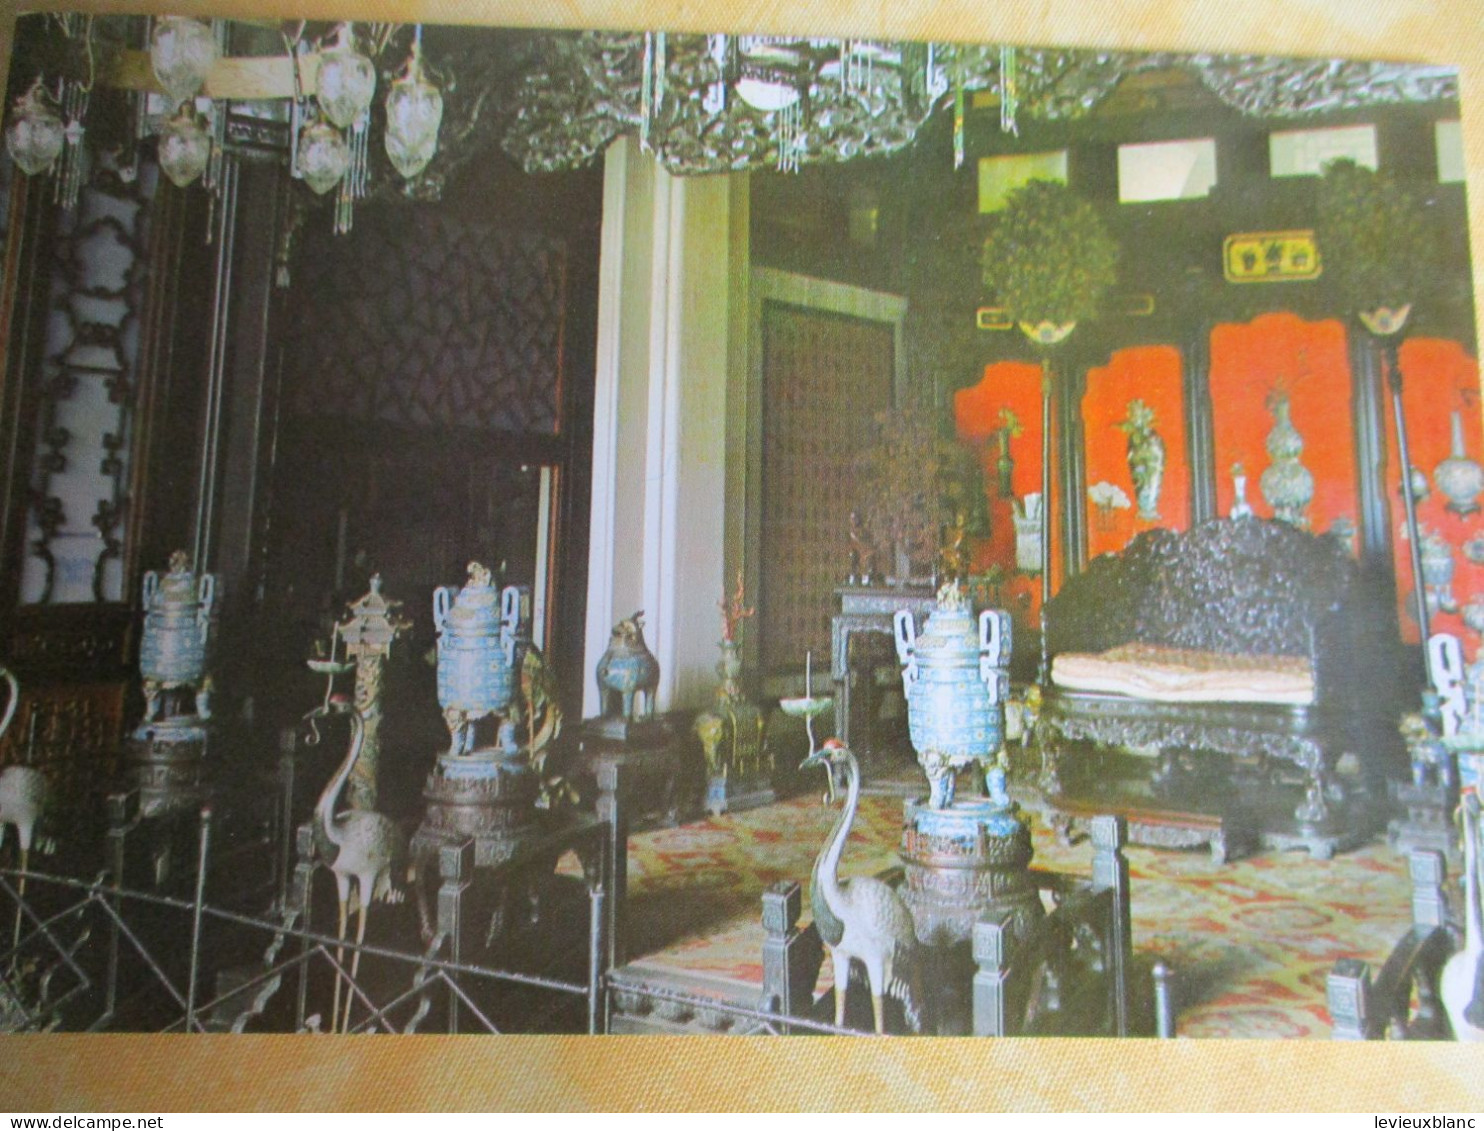 10 cartes postales anciennes/The SUMMER PALACE /Be Jing /  République Populaire de Chine / Vers 1980      JAP57